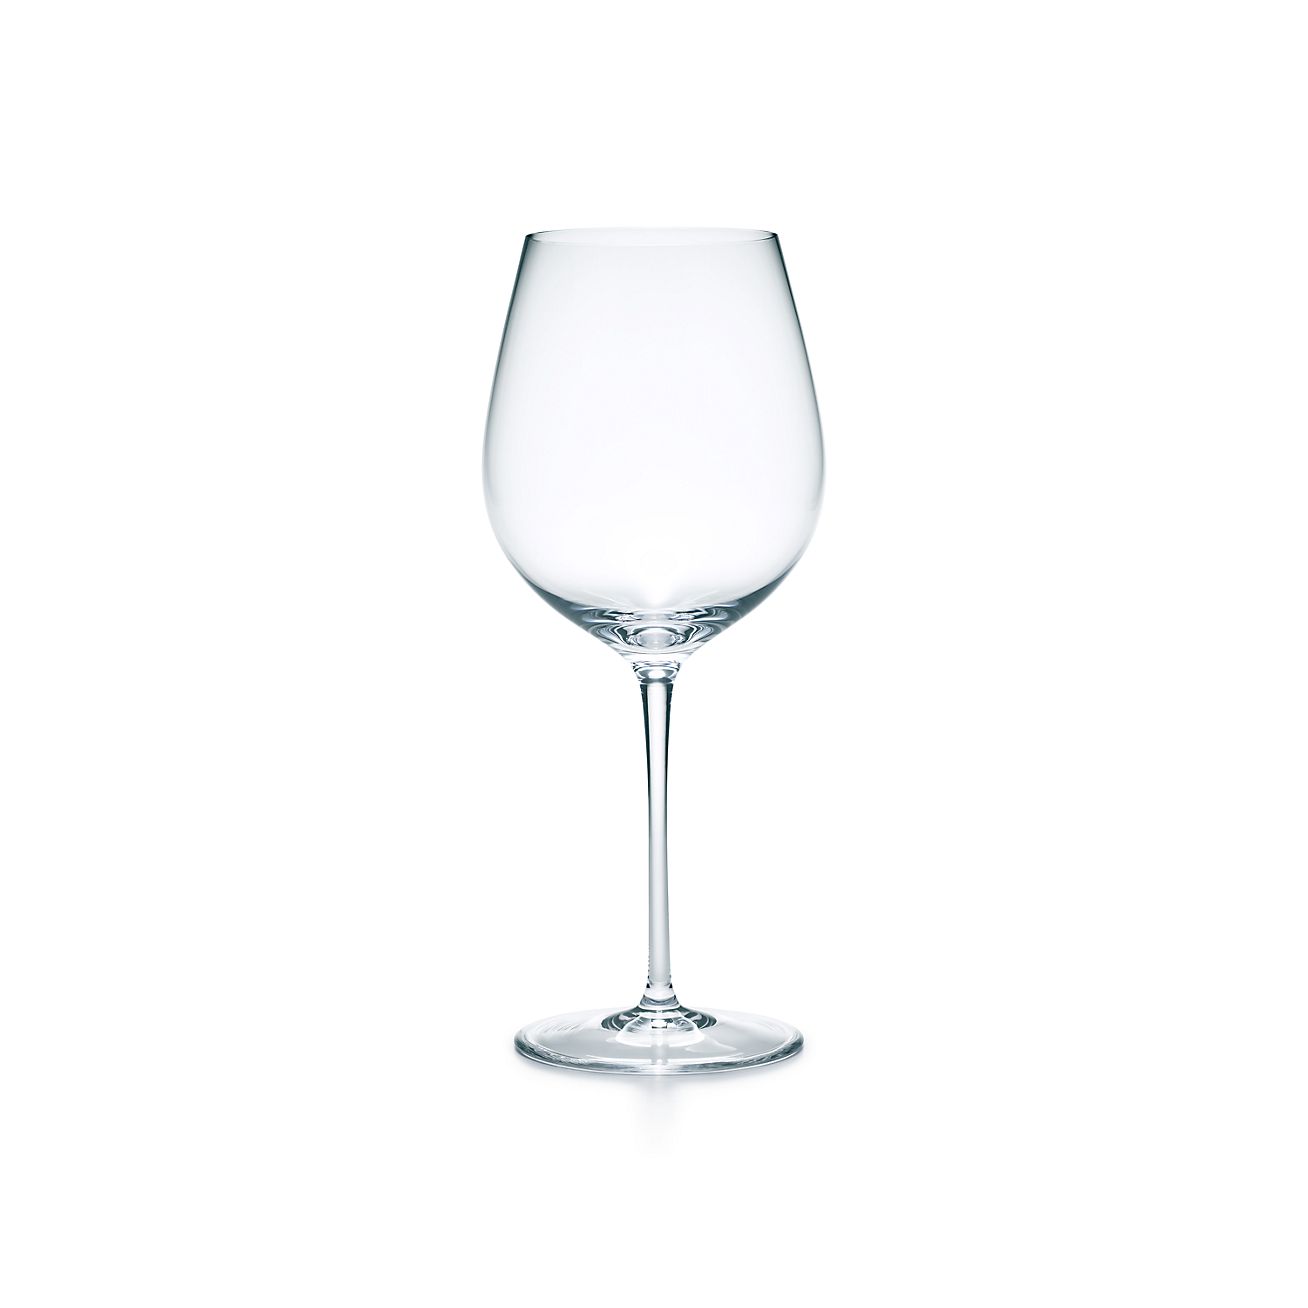 tiffany & co wine glass